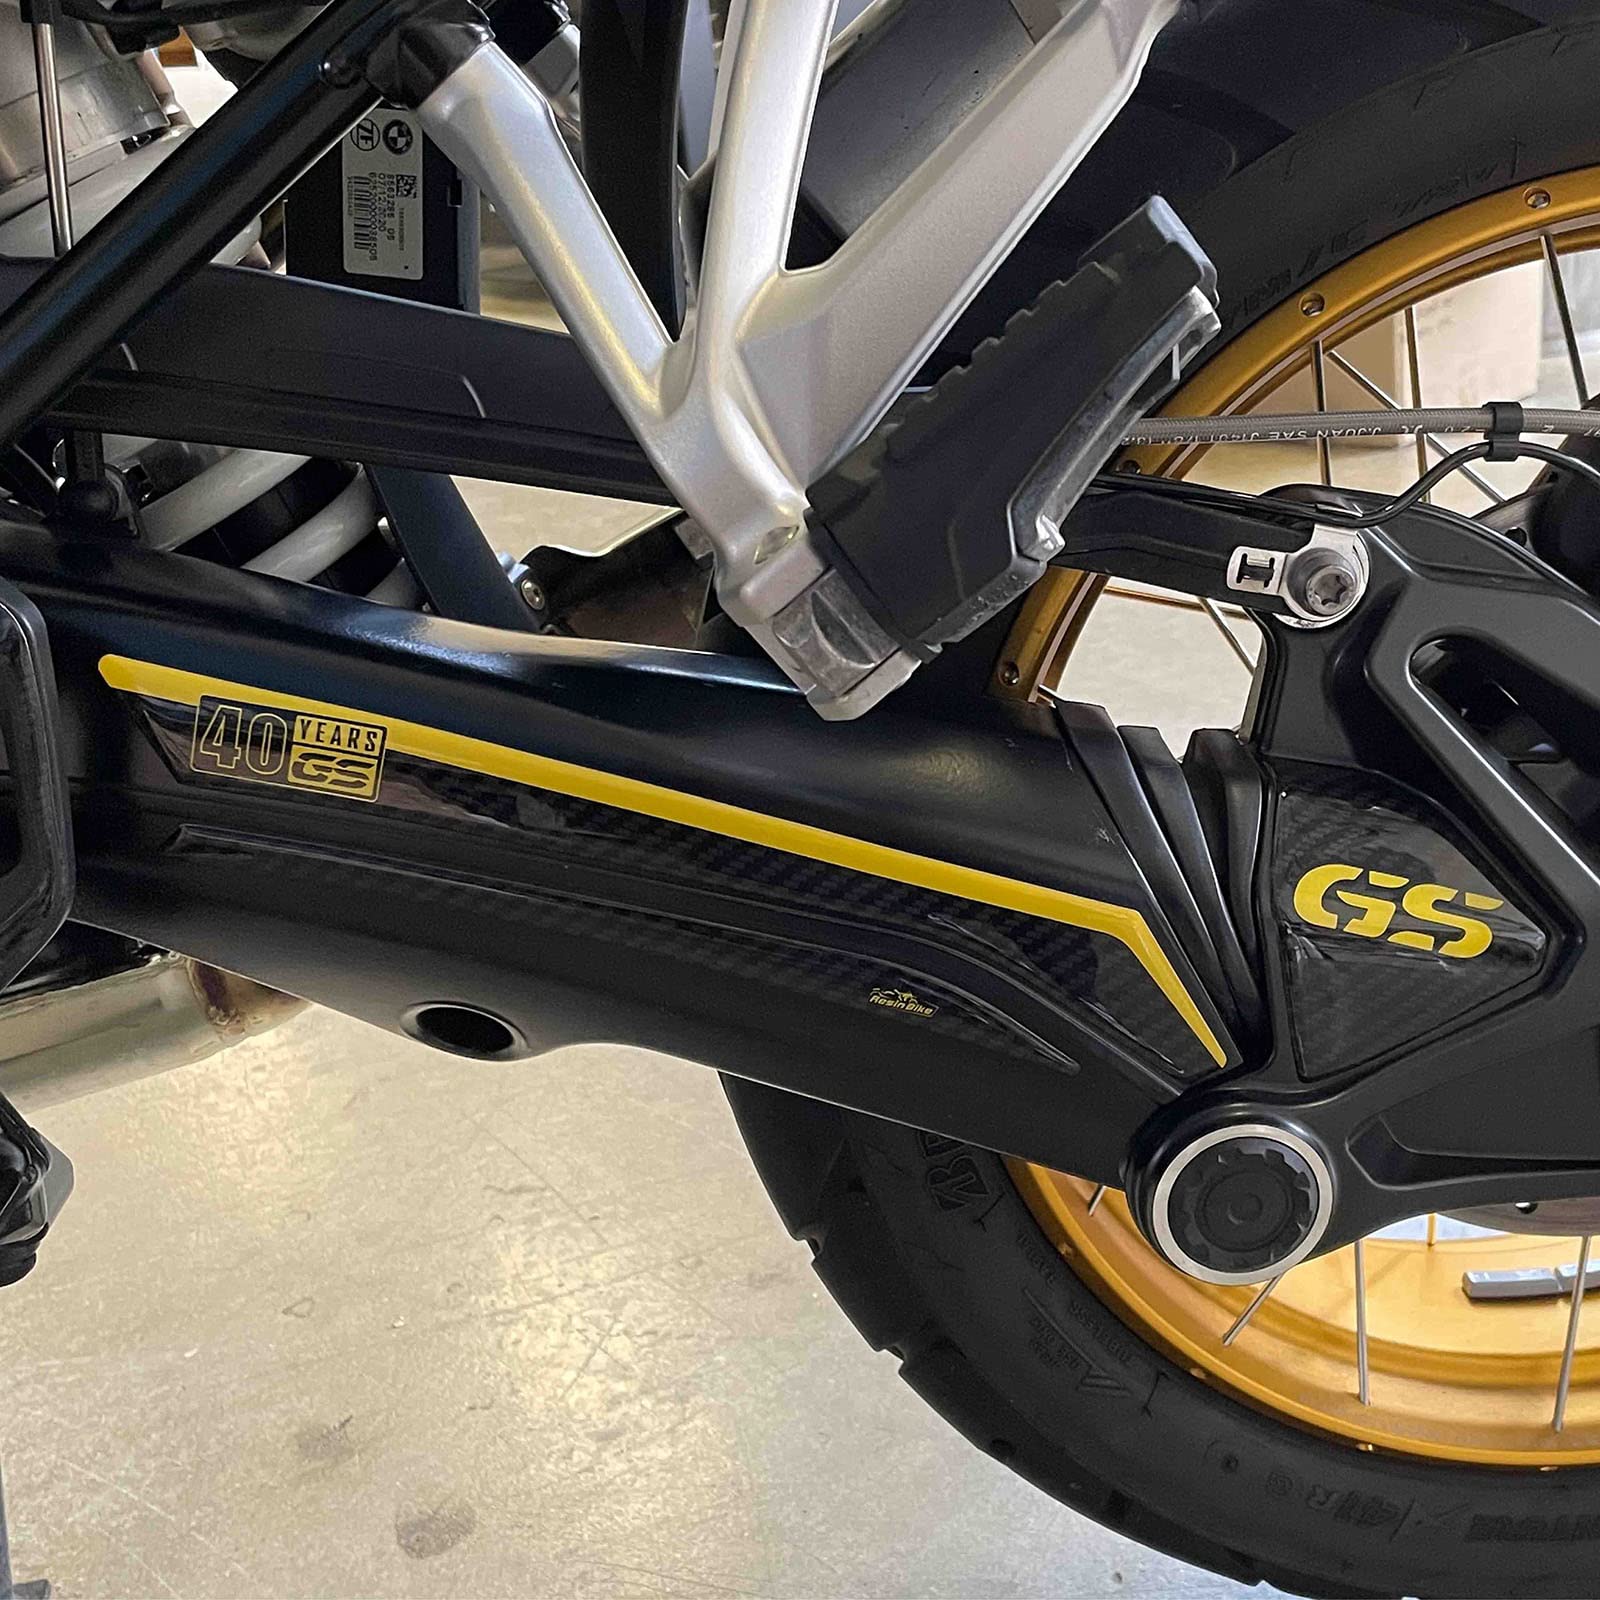 Resin Bike Aufkleber für Motorrad Kompatibel mit BMW R 1250 GS Edition 40th 2021 2022. Schwingschutz vor Stößen und Kratzern. 3D-Harzklebstoff – Stickers - Made in Italy von Resin Bike